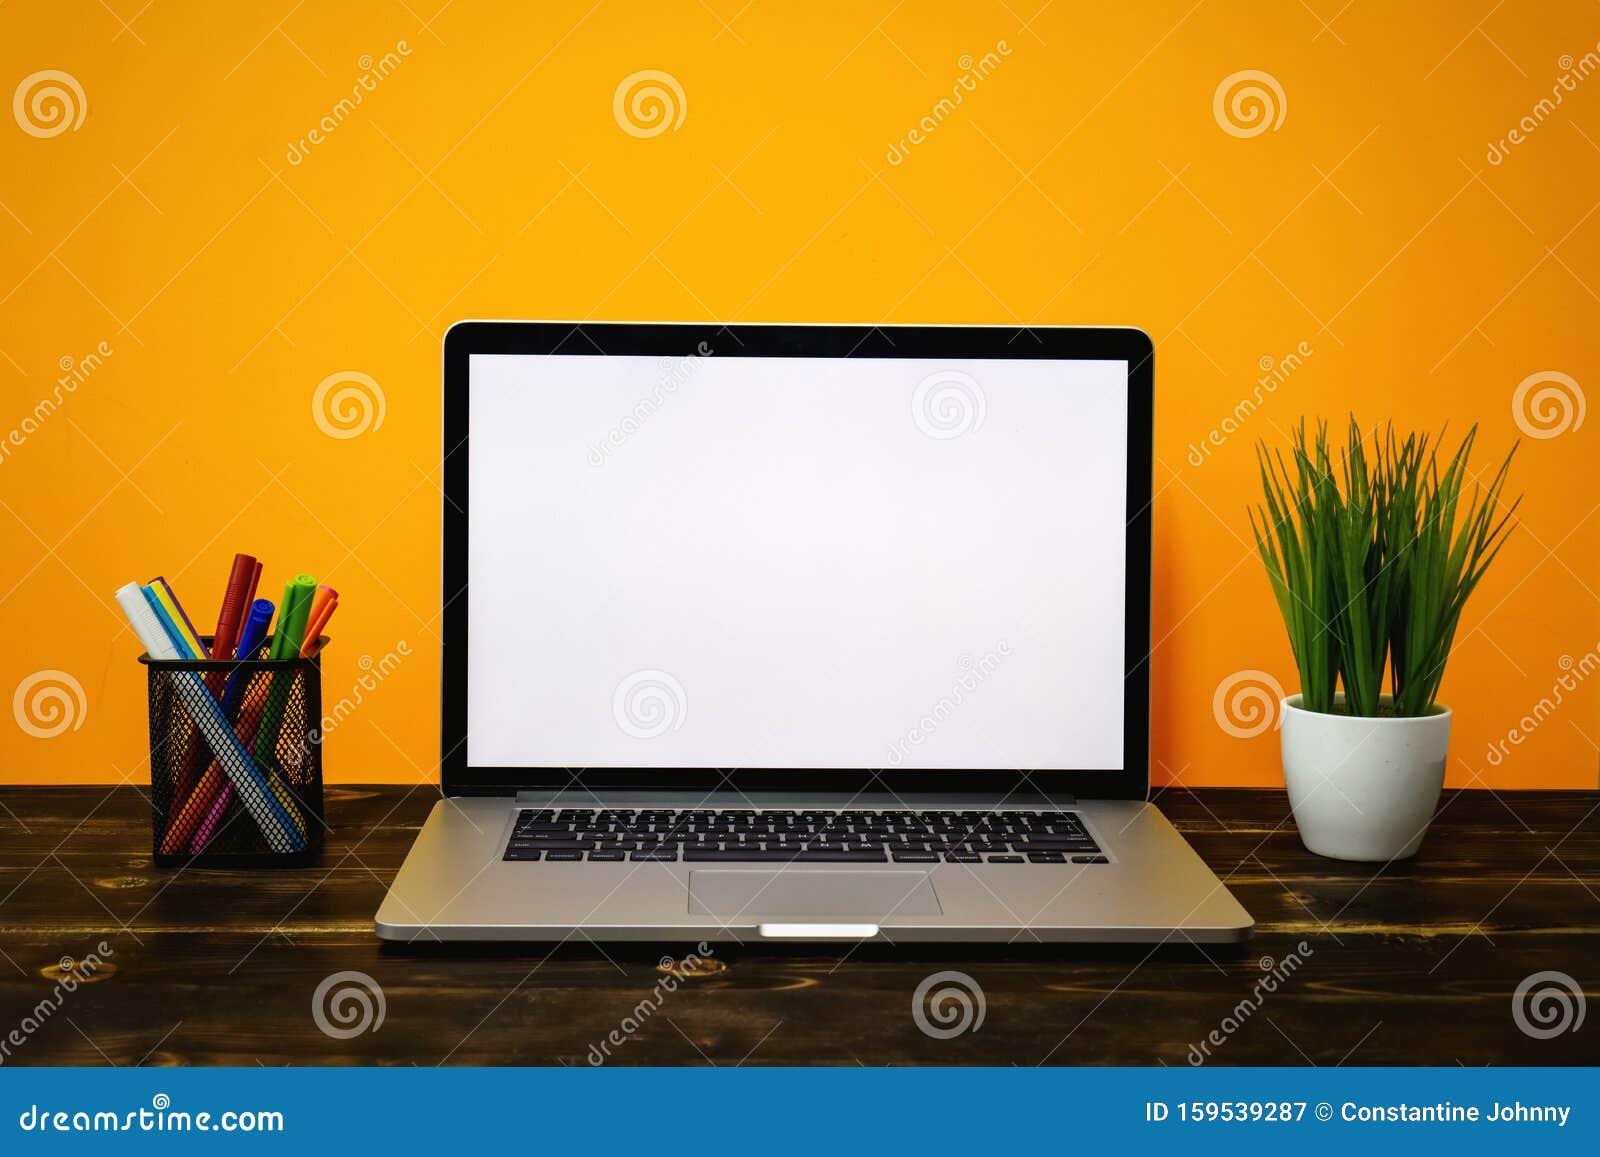 Tình yêu với thiết kế đơn giản và tự nhiên? Hãy khám phá hình ảnh màn hình trống của Laptop trên gỗ sồi thô đẹp mắt, phía sau là nền vàng tươi sáng. Với thiết kế Rustic Wood, Against Yellow sẽ giúp bạn tạo ra những sản phẩm thiết kế đẹp mắt và bắt mắt nhất. Khám phá ngay để thưởng thức!